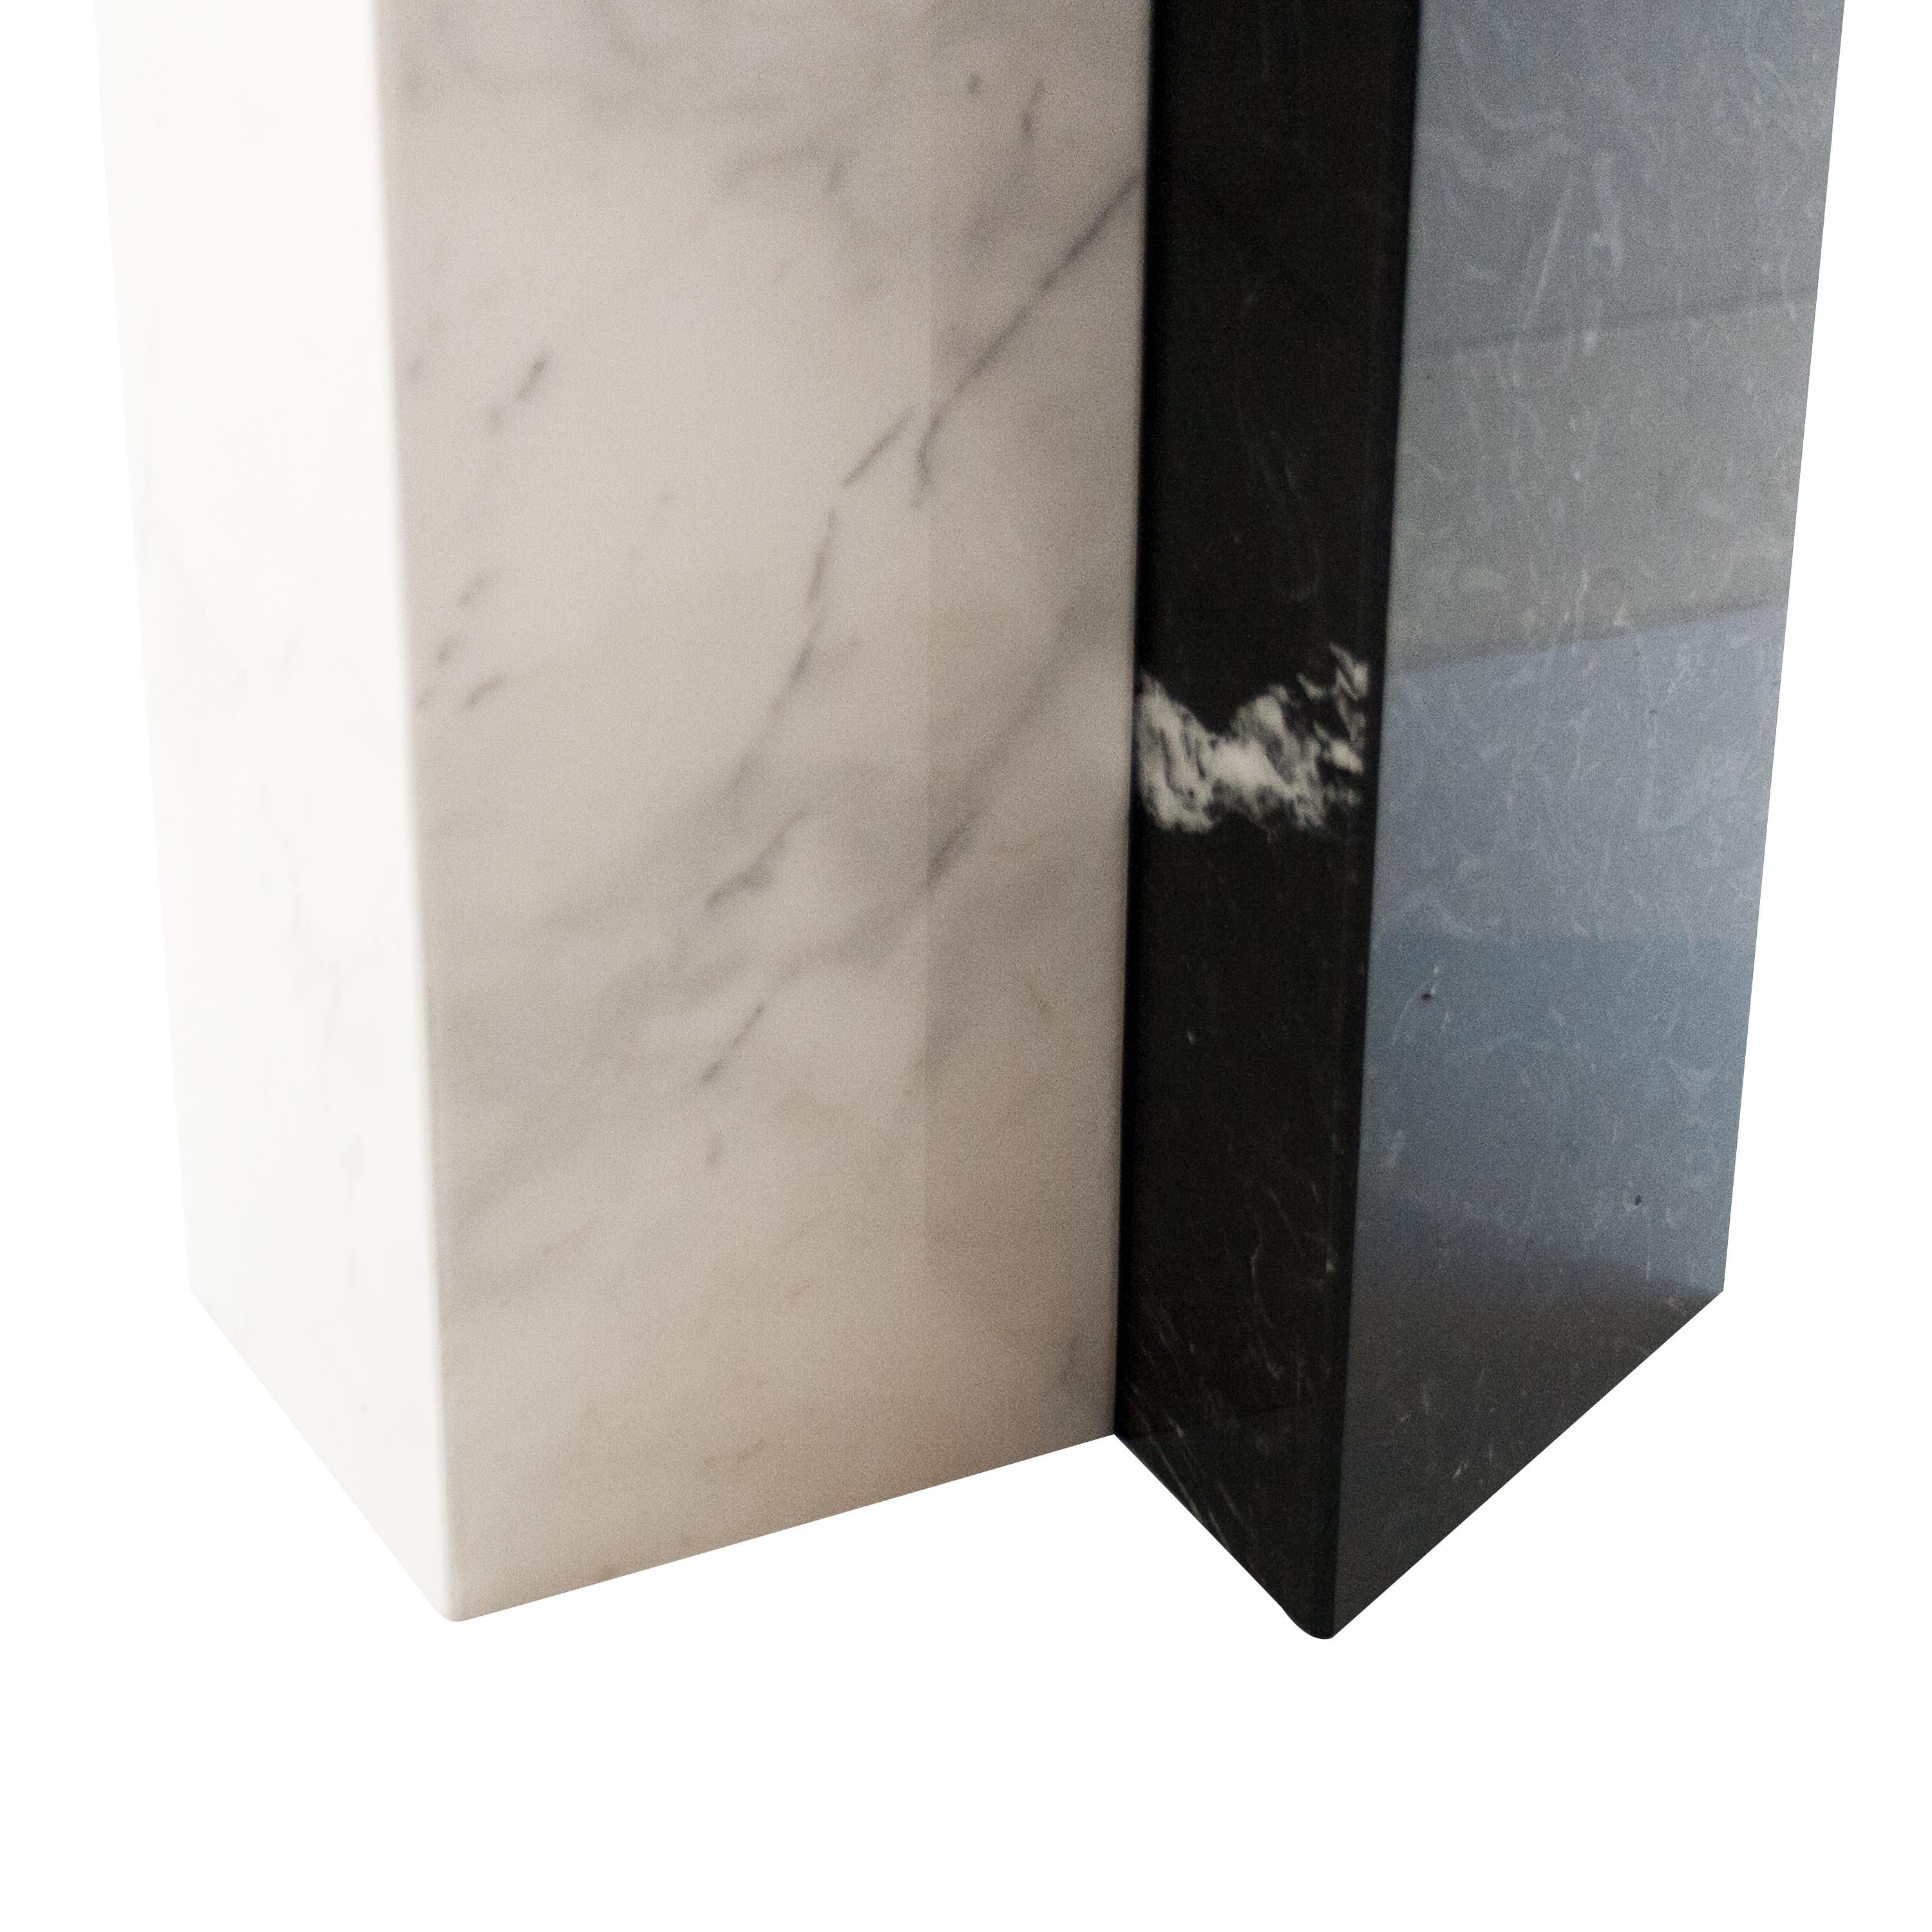 Table basse conçue par IKB191, de forme arrondie. Structure composée d'un prisme carré en marbre blanc de Carrare et d'un prisme triangulaire en marbre noir de Marquina. Le plateau est également en marbre blanc de Carrare.